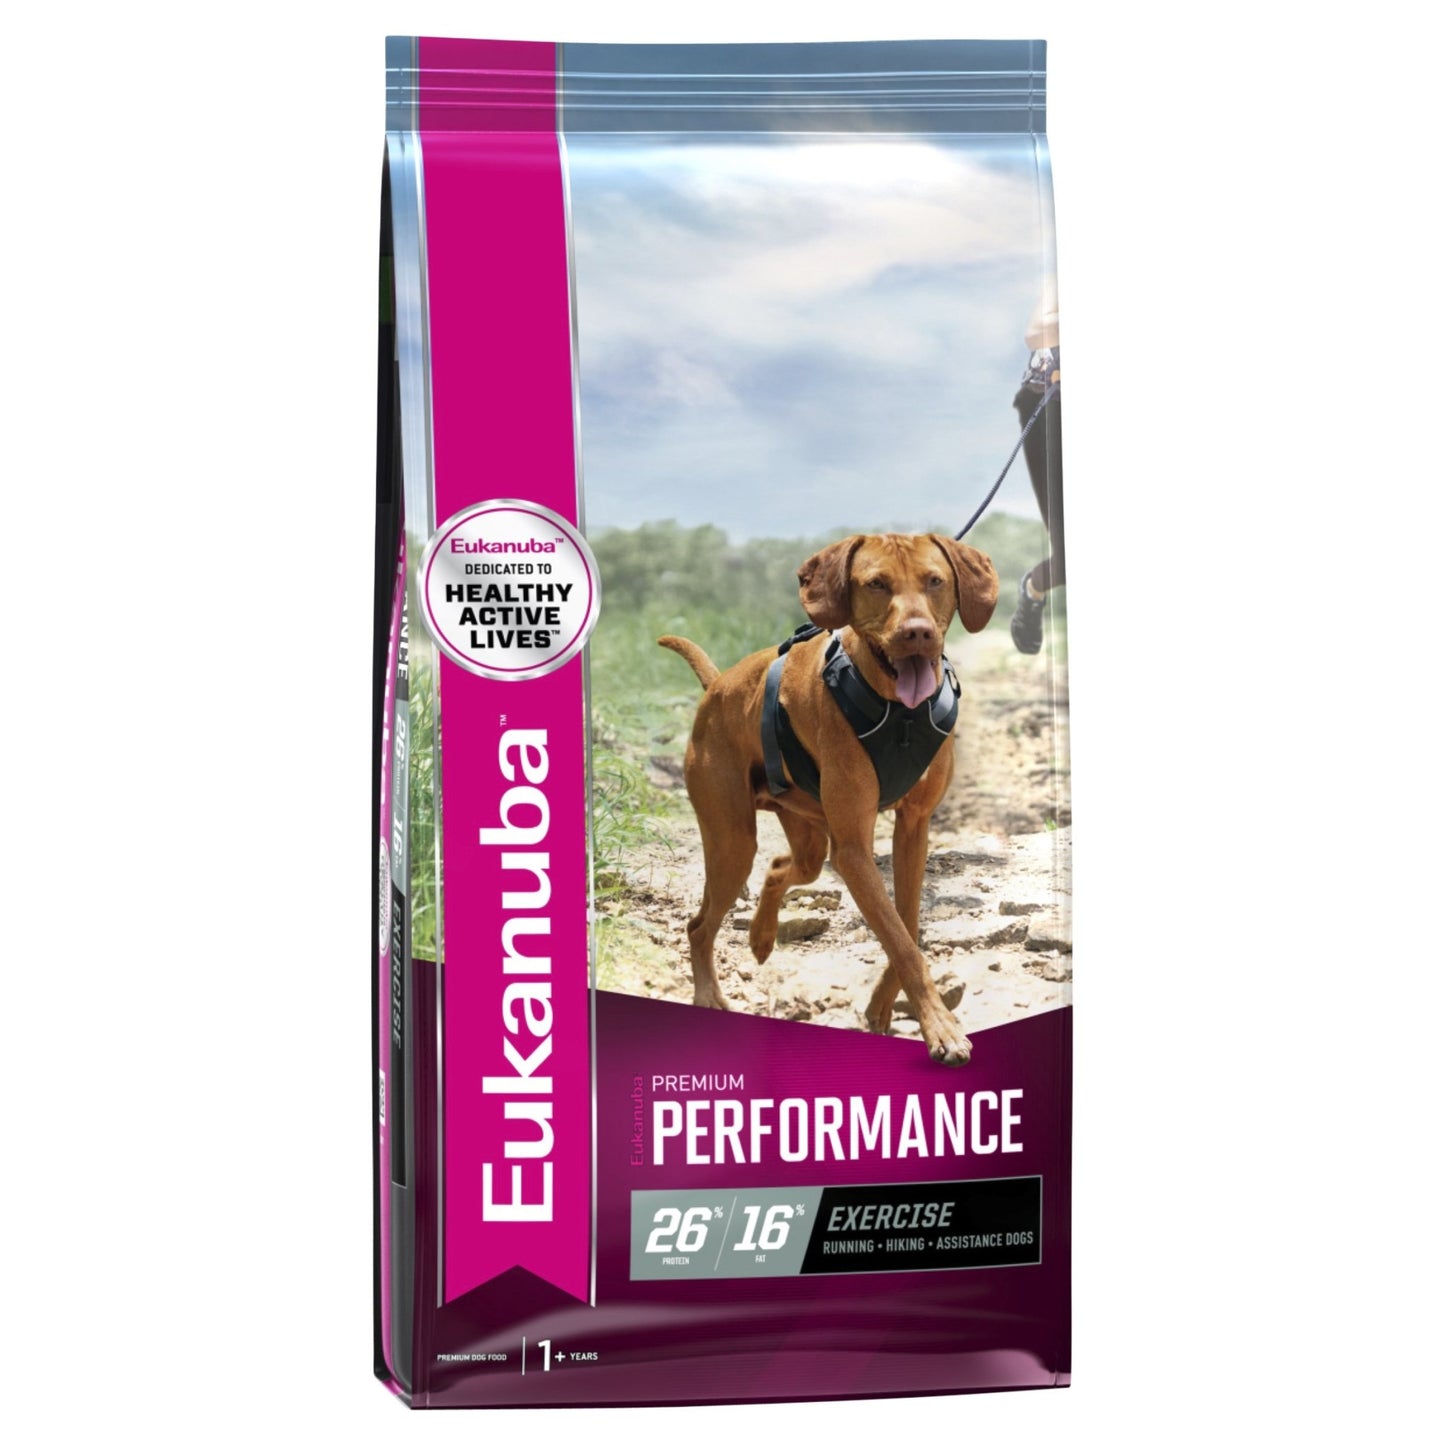 Eukanuba Dry Dog Food Premium Performance Exercise 15kg - Woonona Petfood & Produce